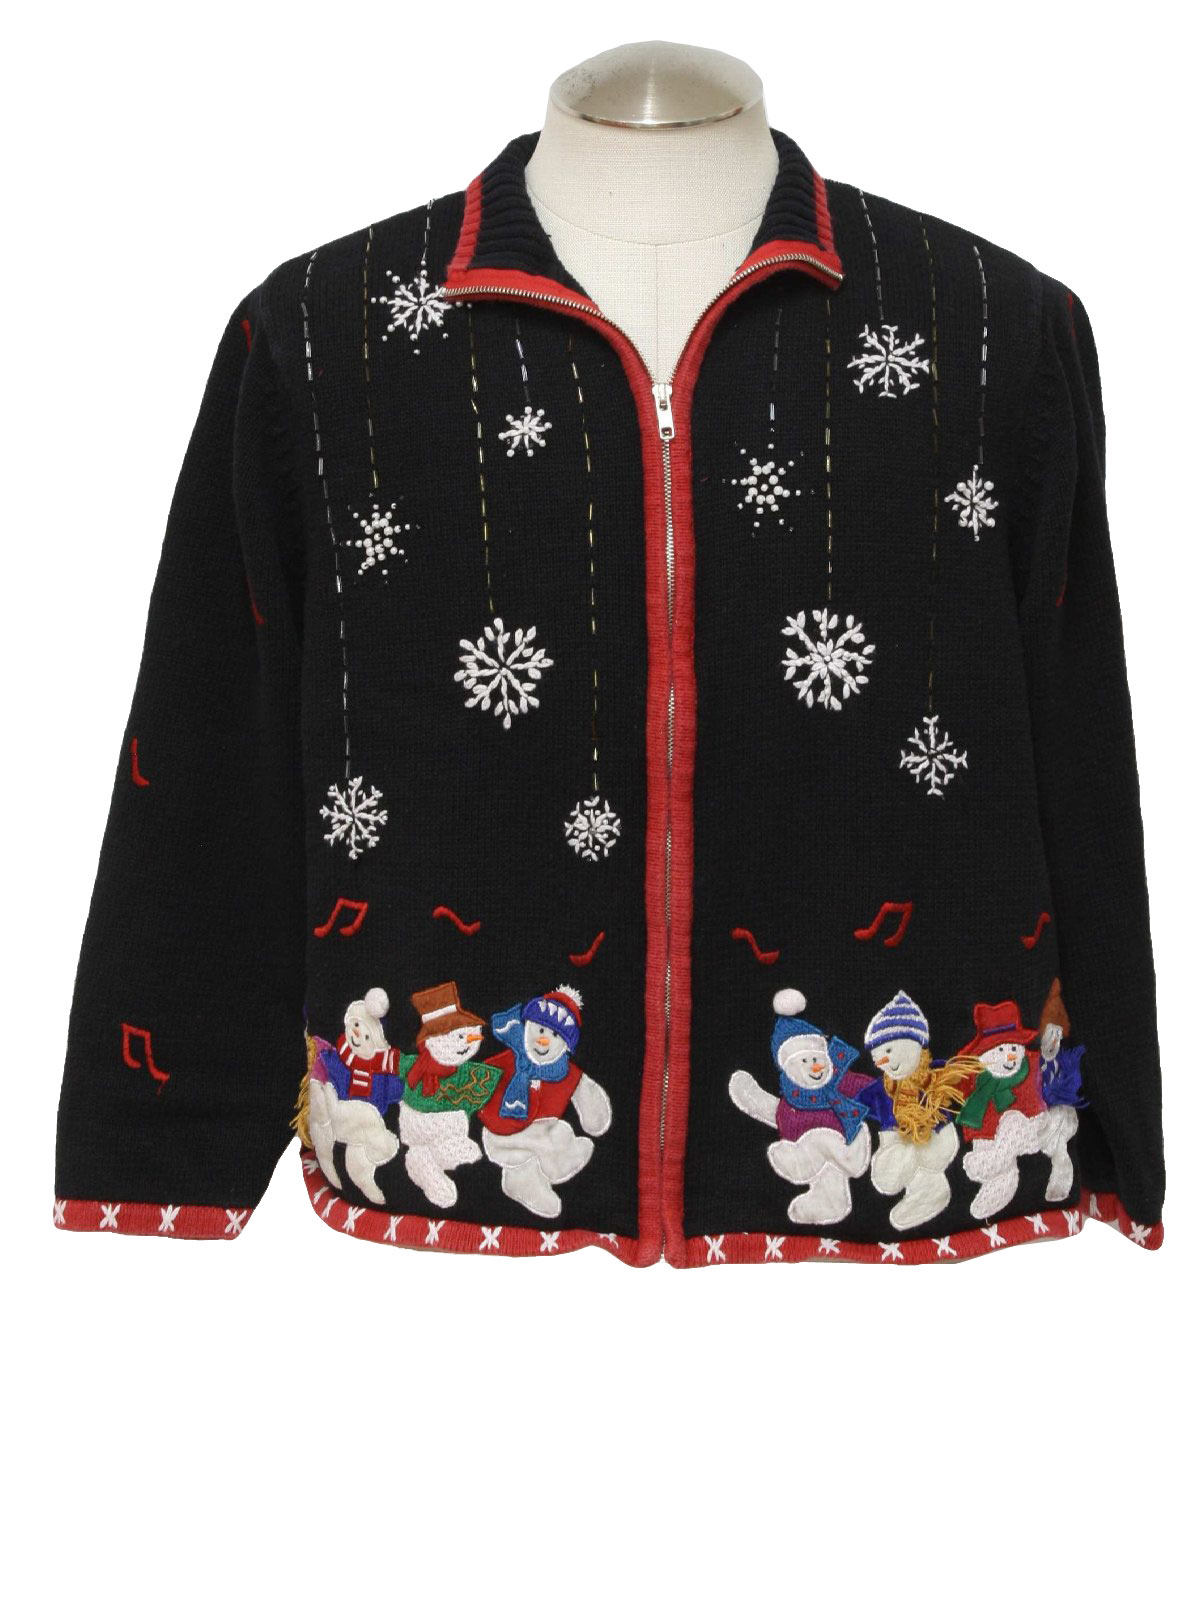 Ugly Christmas Sweater : -Studio Joy - Unisex Black background cotton ...